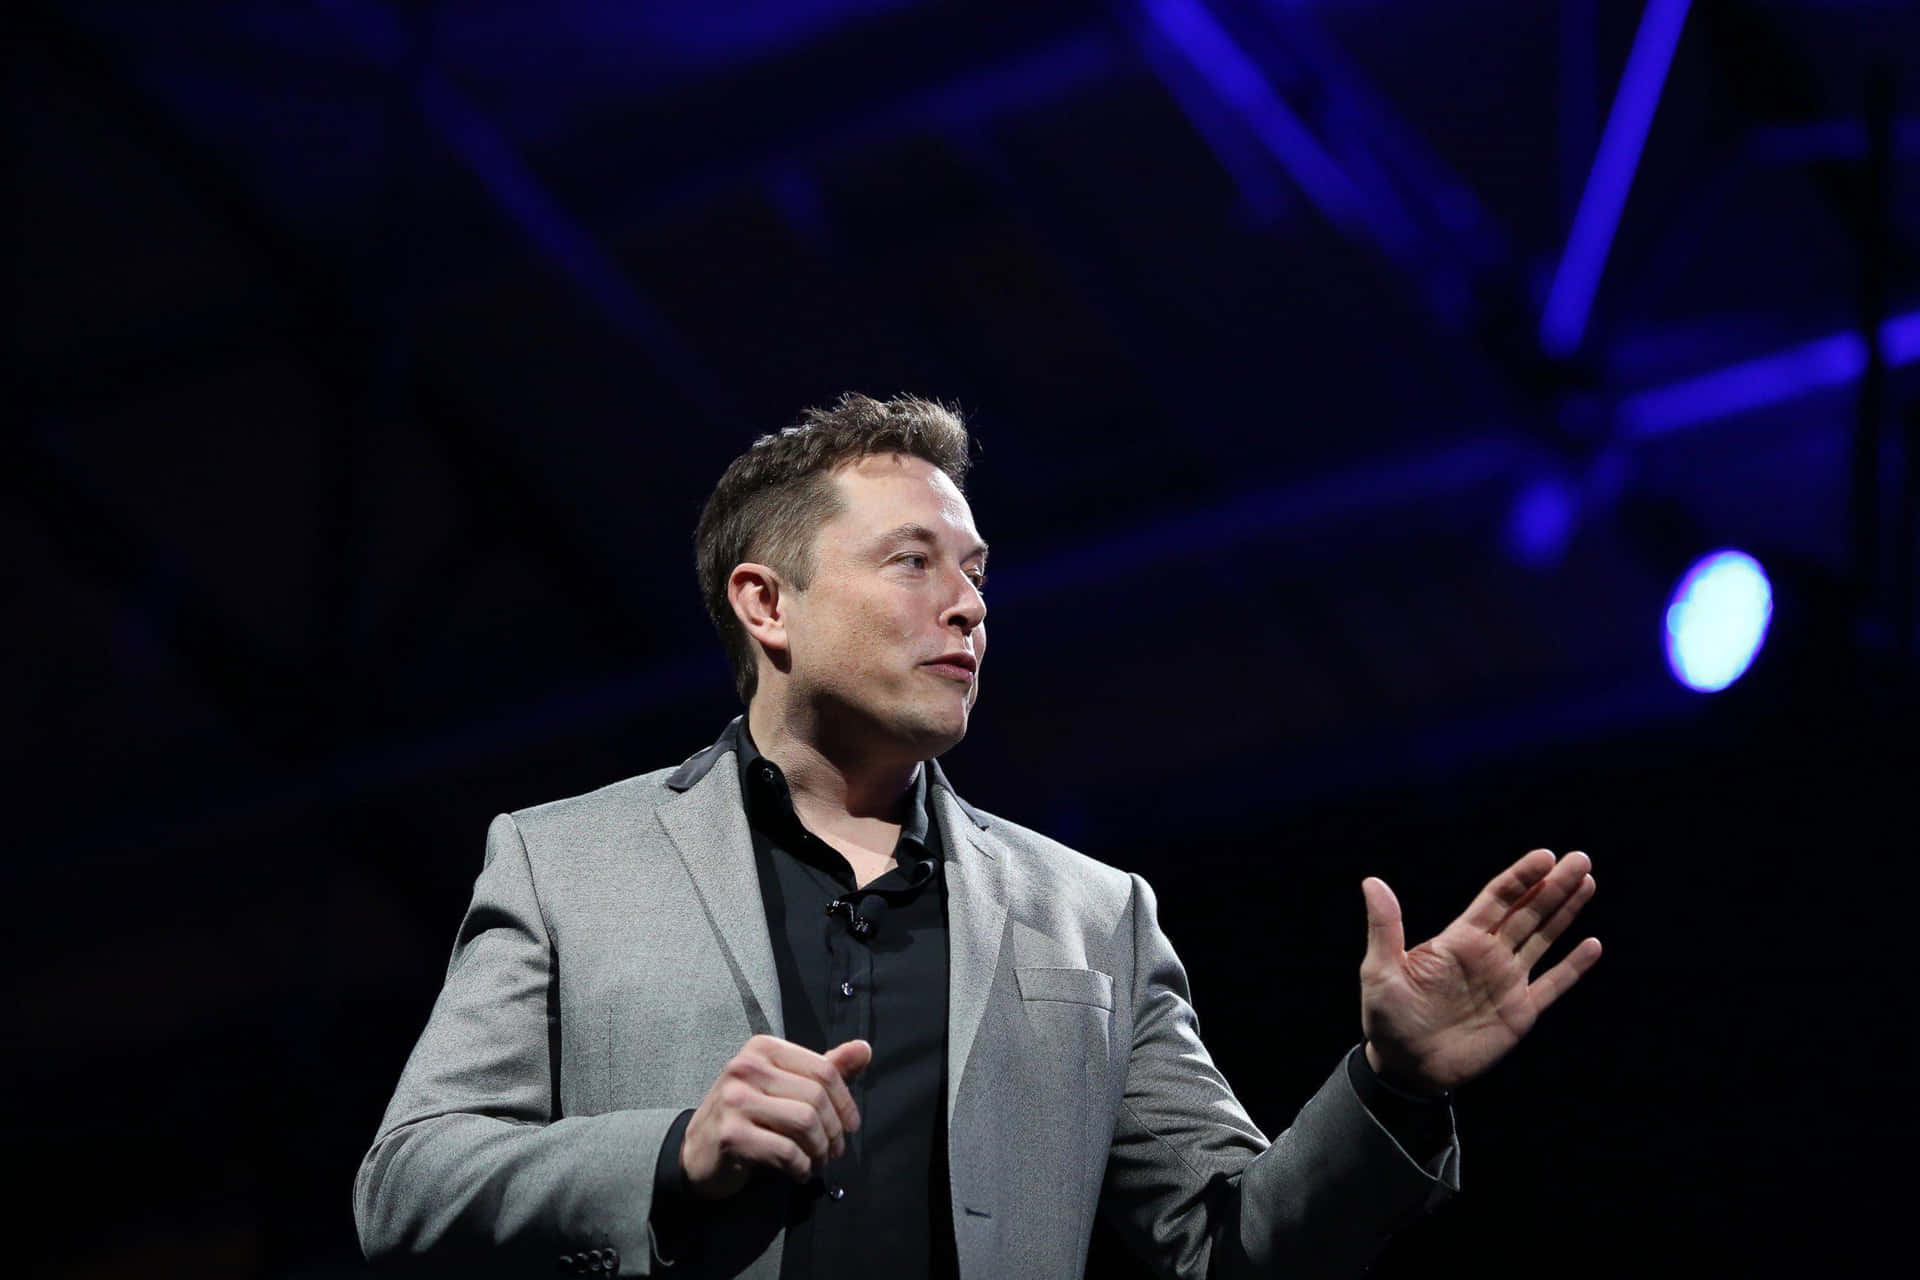 Bildvon Elon Musk, Visionärem Erfinder Und Unternehmer